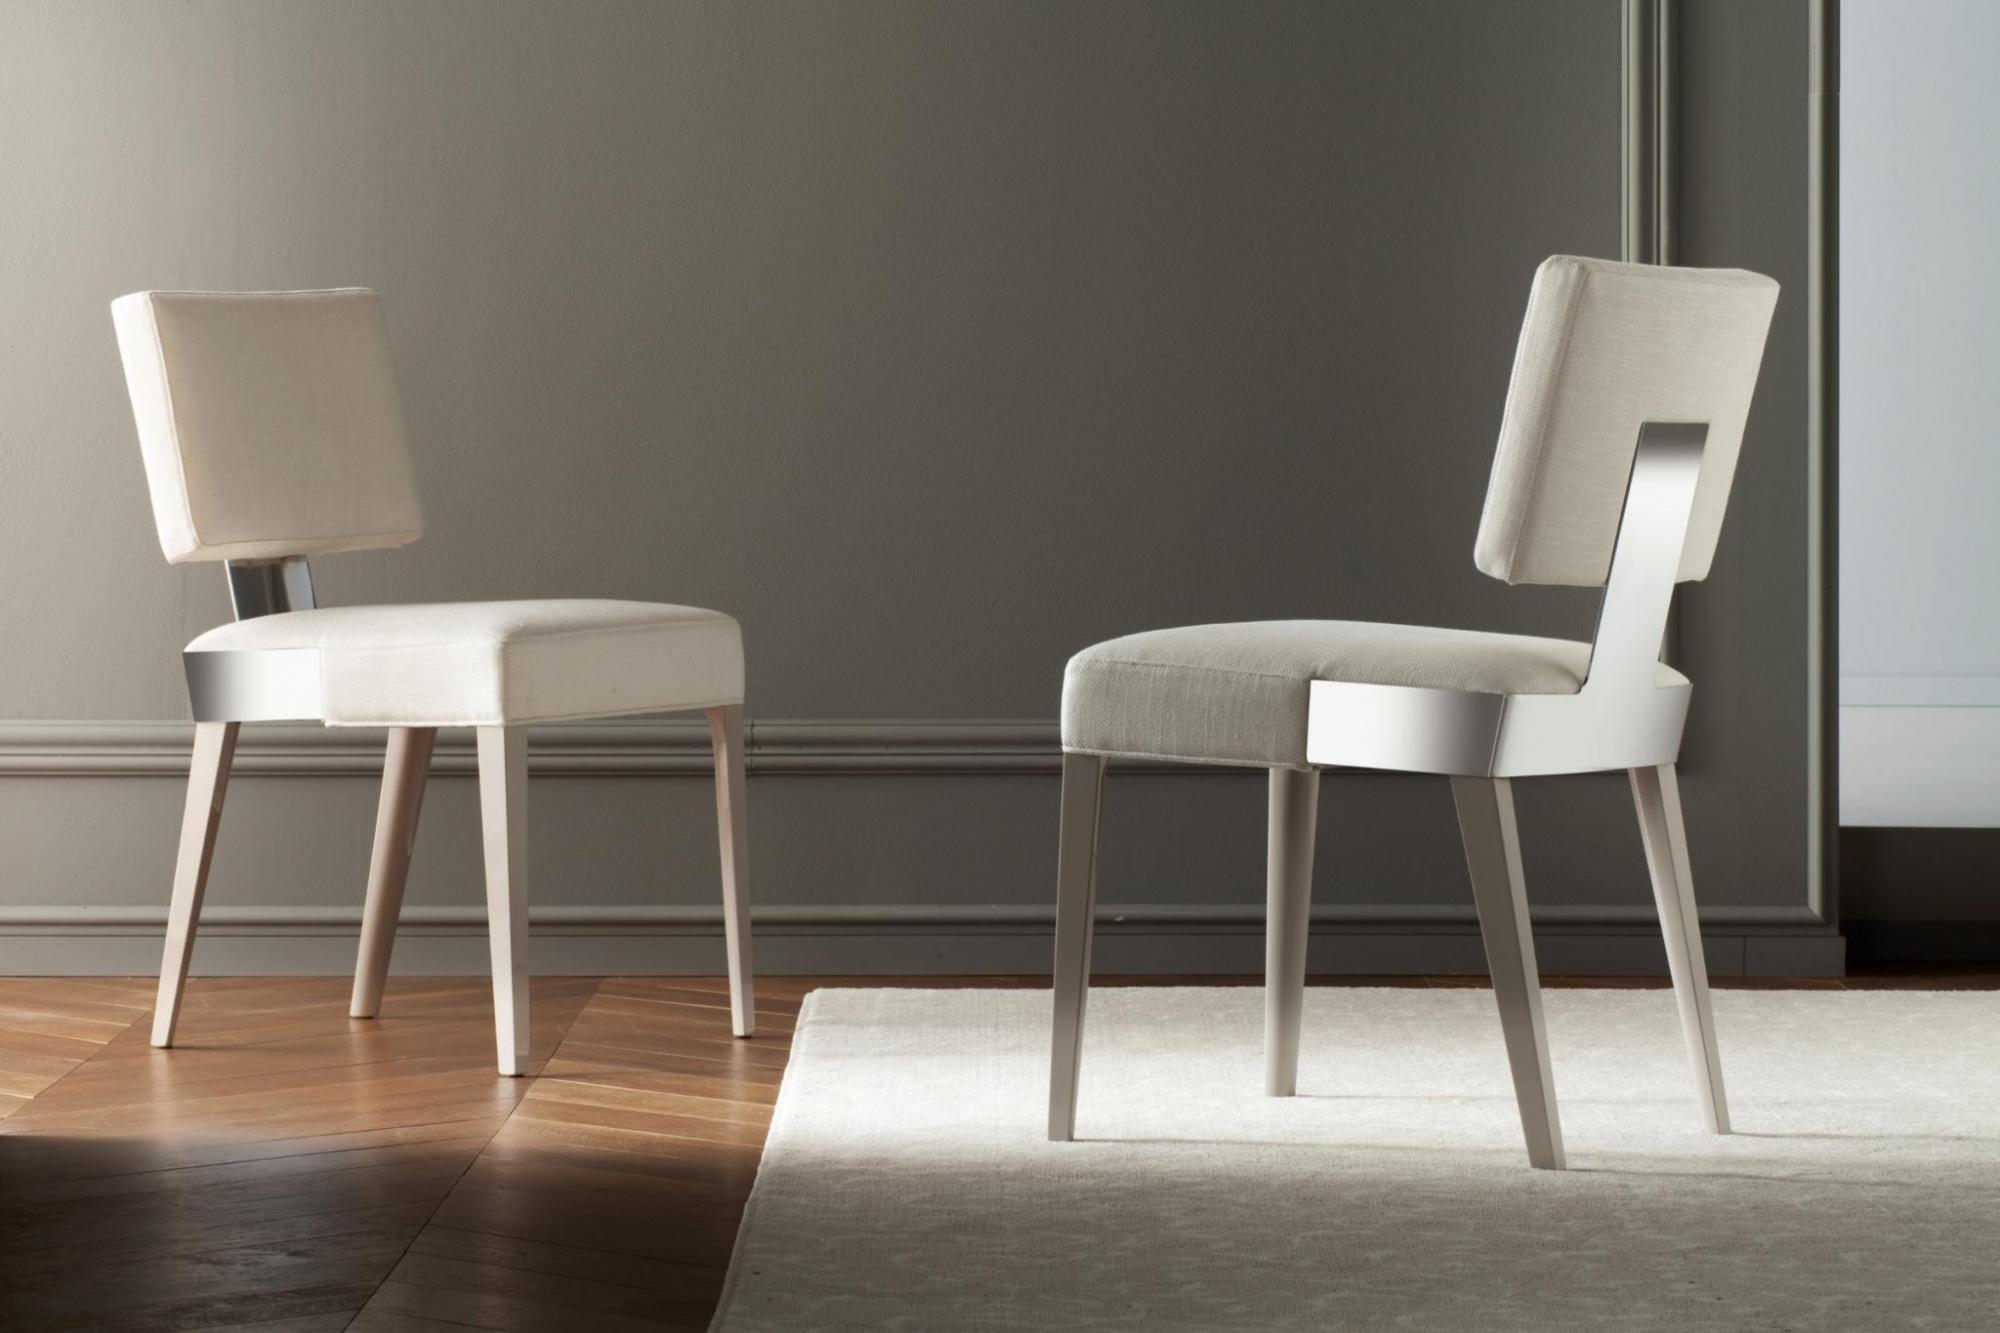 意大利家具costantinipietro的chairs-Focus 餐椅 主图